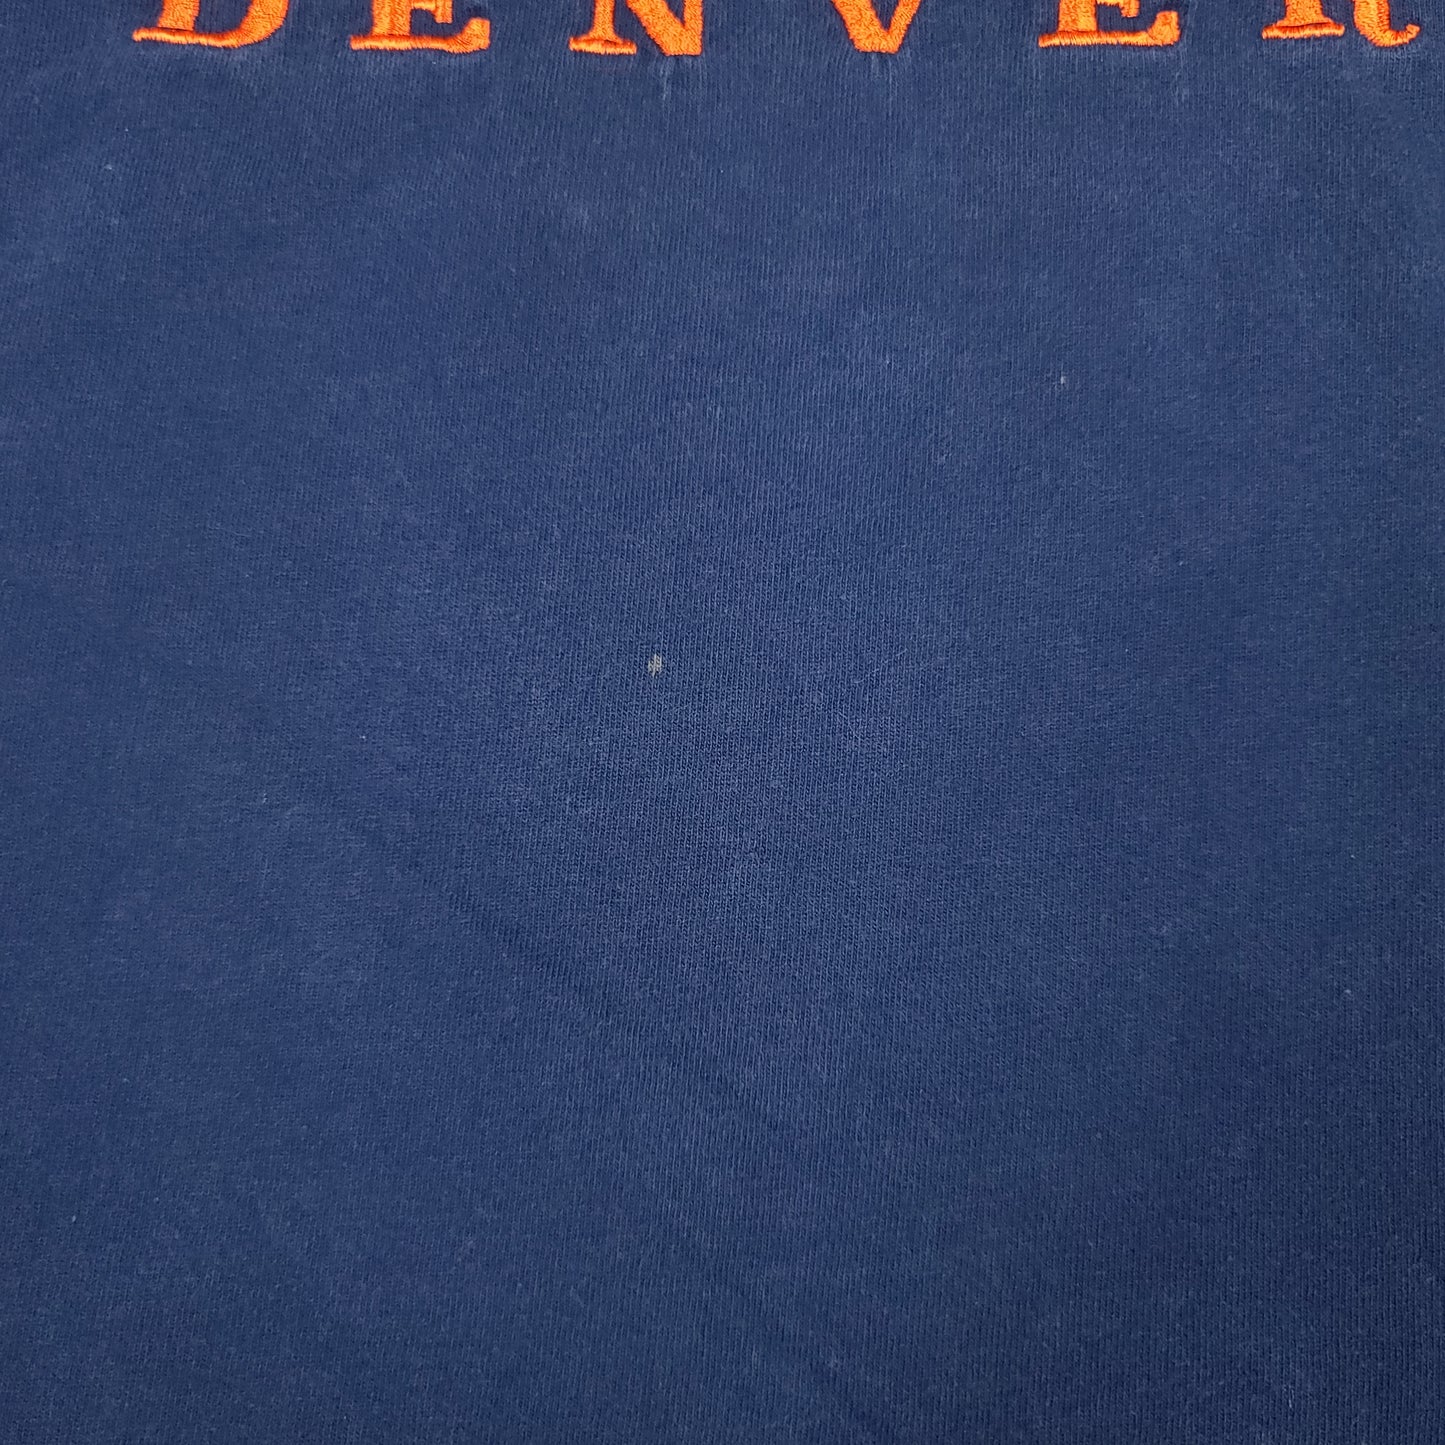 Vintage Denver Broncos Blue Logo Athletic Shirt